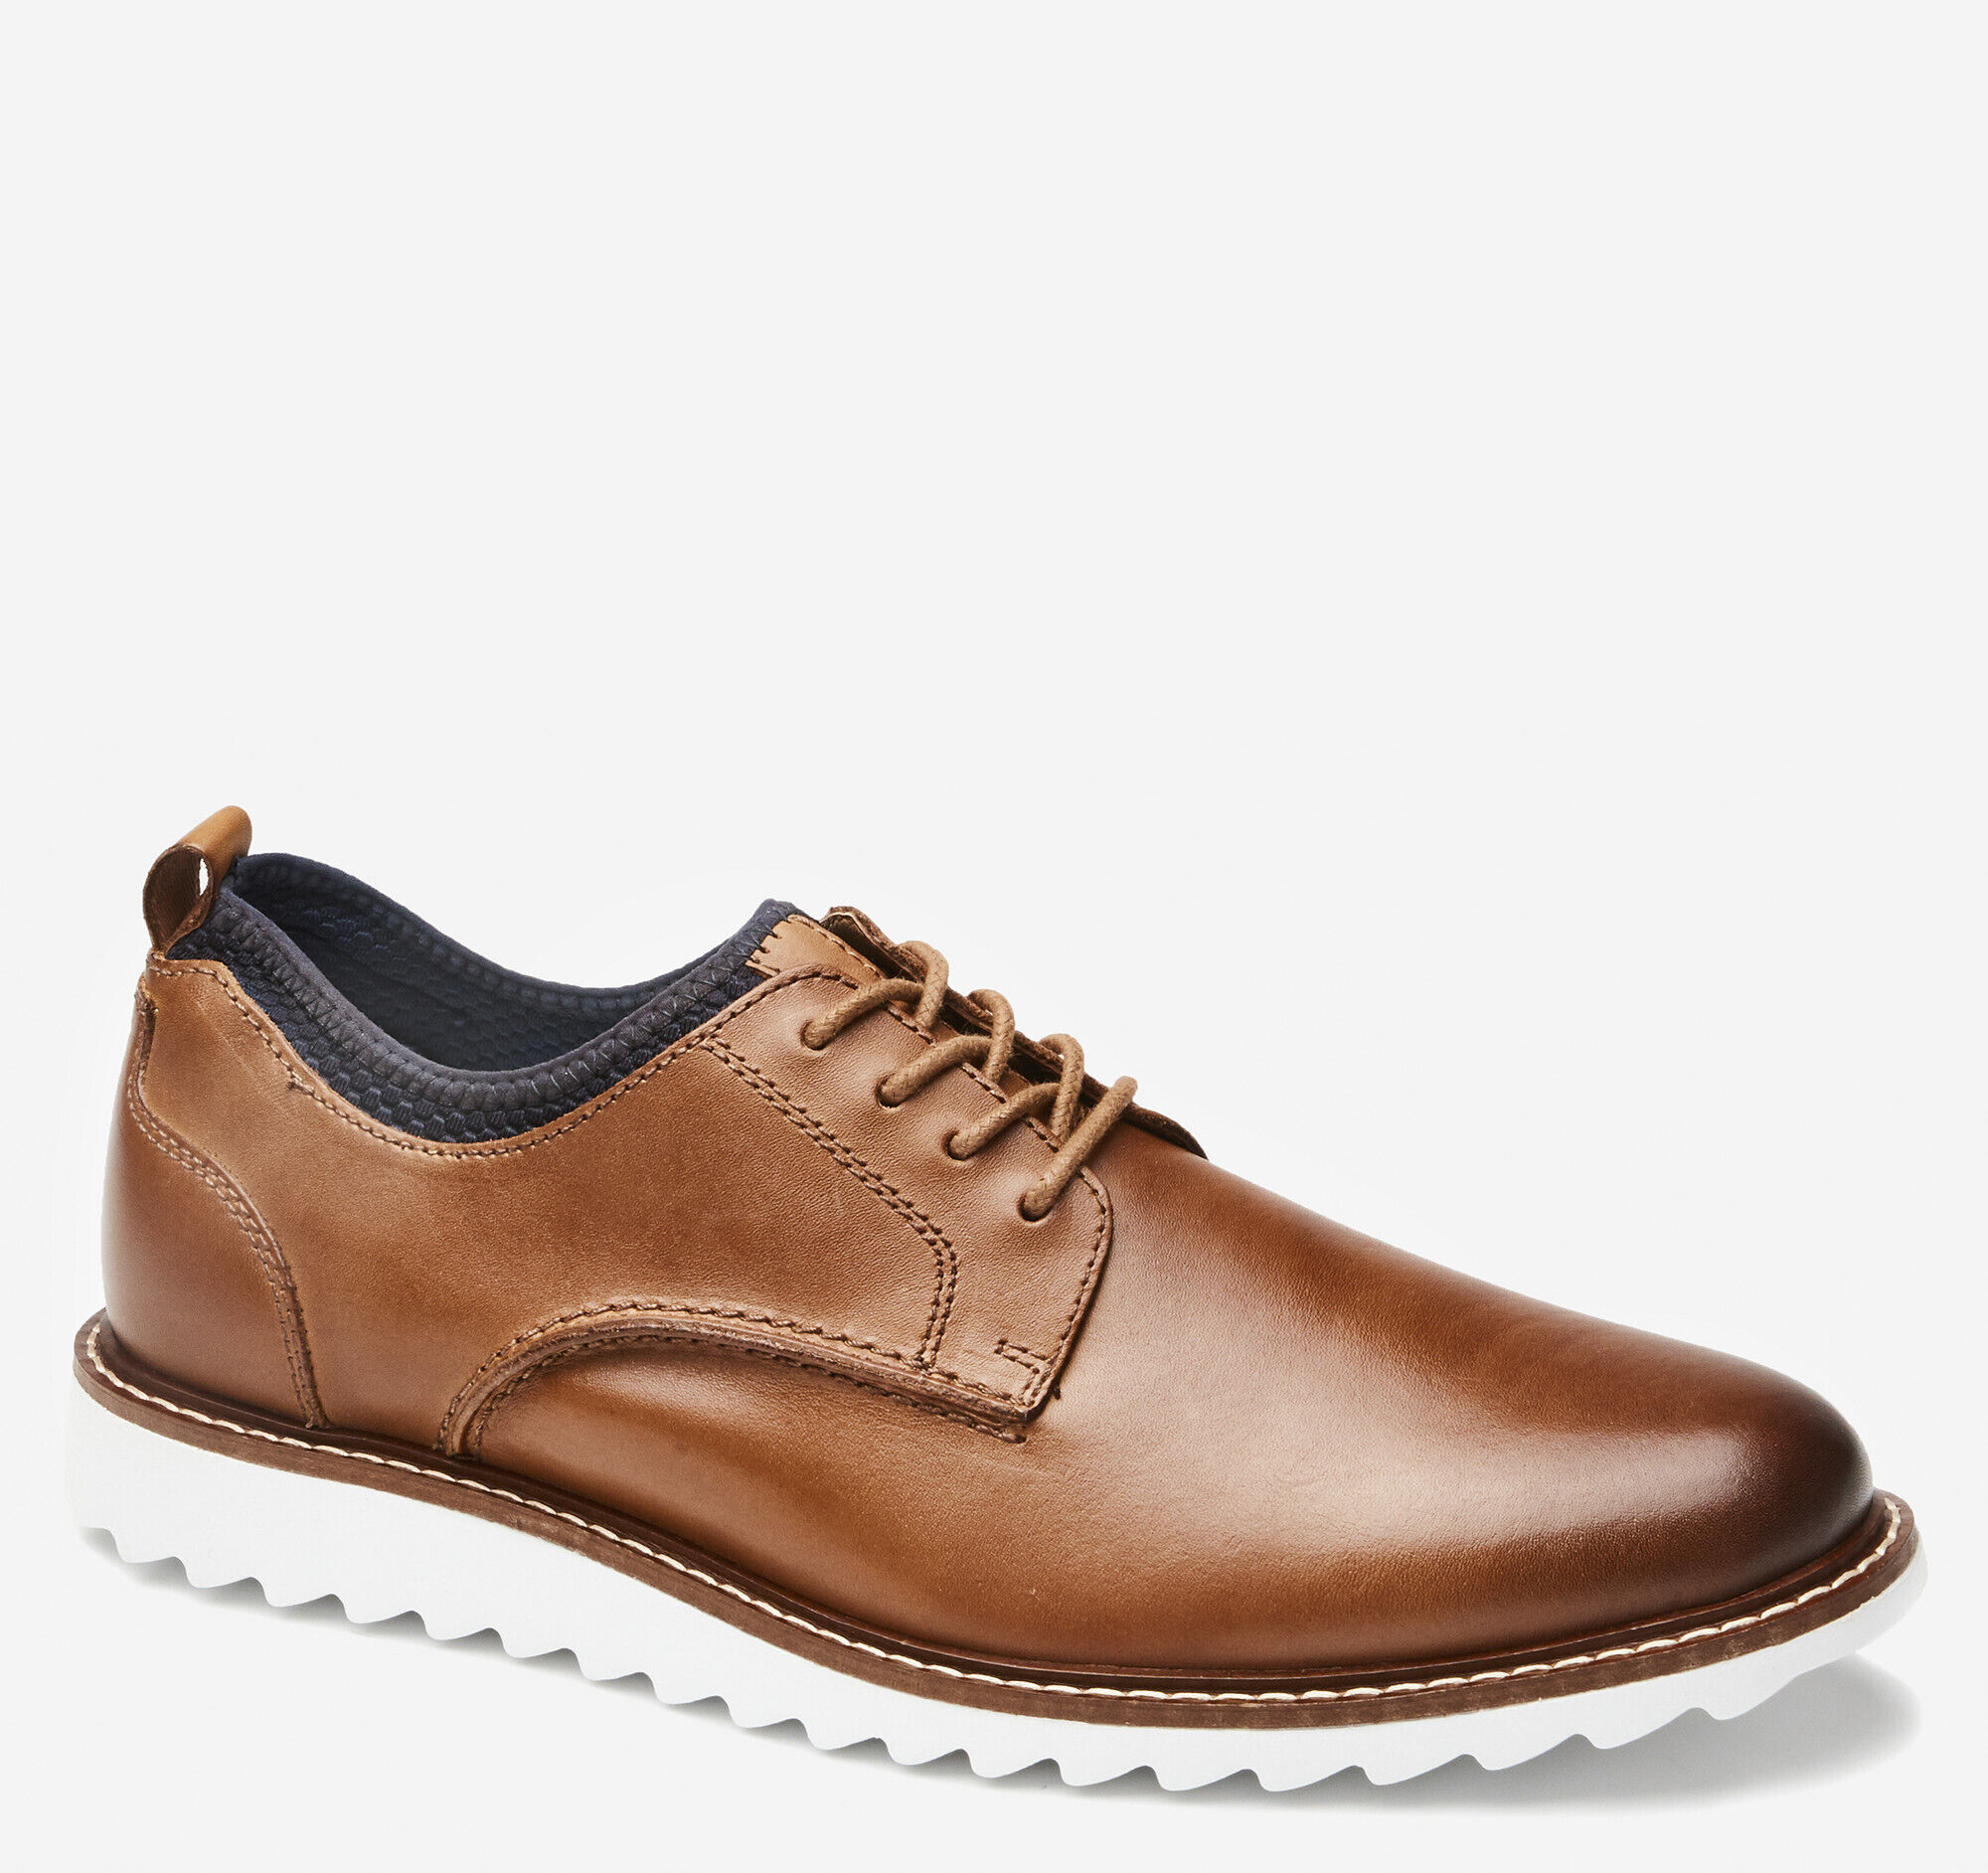 151060 ES50 Men's Shoes Size 8.5 M Tan Leather Lace Up Johnston & Murphy 